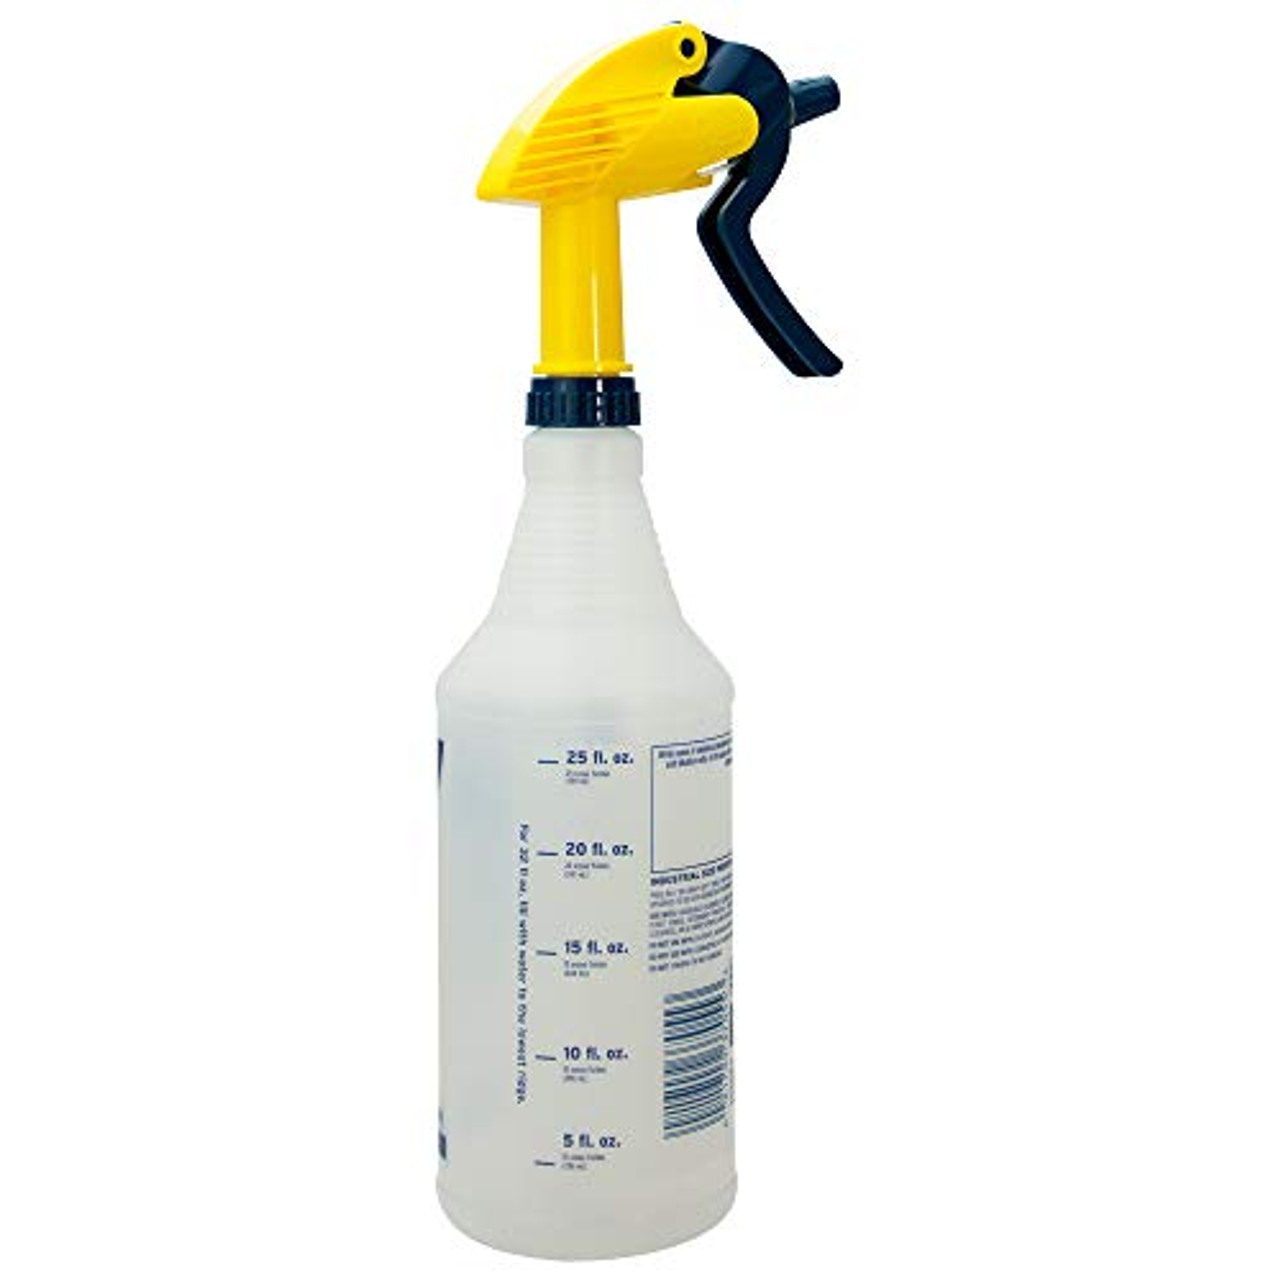  Zep Industrial Sprayer Bottle - 48 Ounces C32810 - Up to 30  Foot Spray, Adjustable Nozzle : Patio, Lawn & Garden